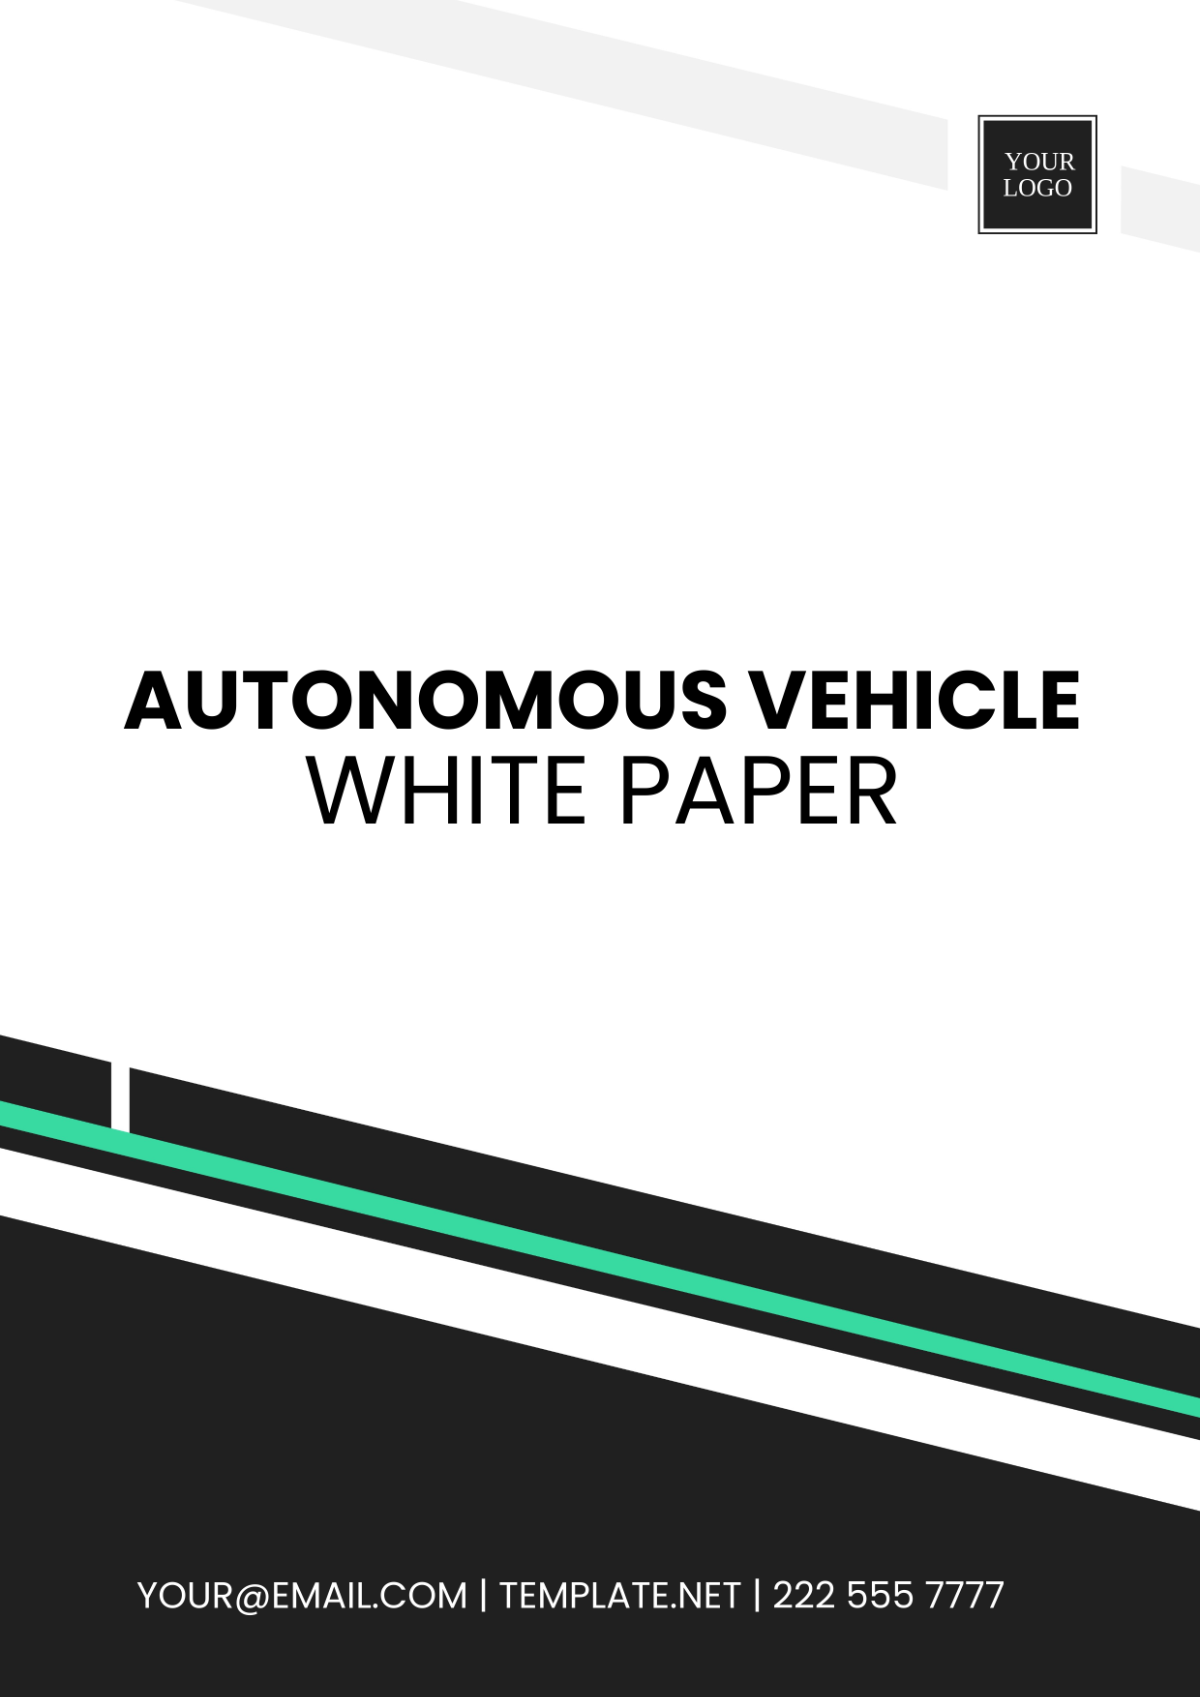 Autonomous Vehicle White Paper Template